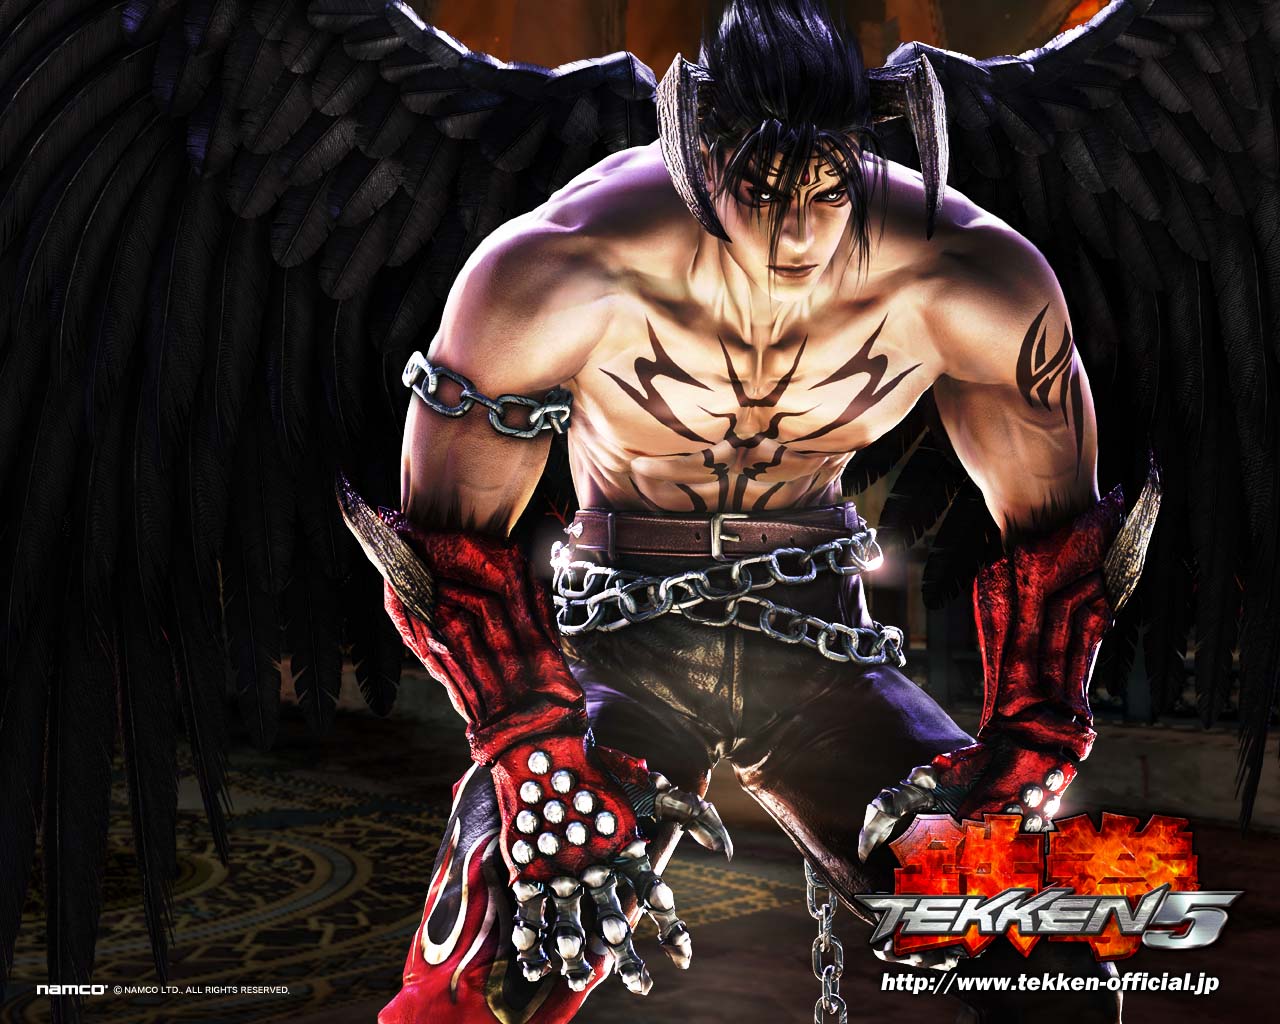 Tekken 5 - Wallpaper Gallery